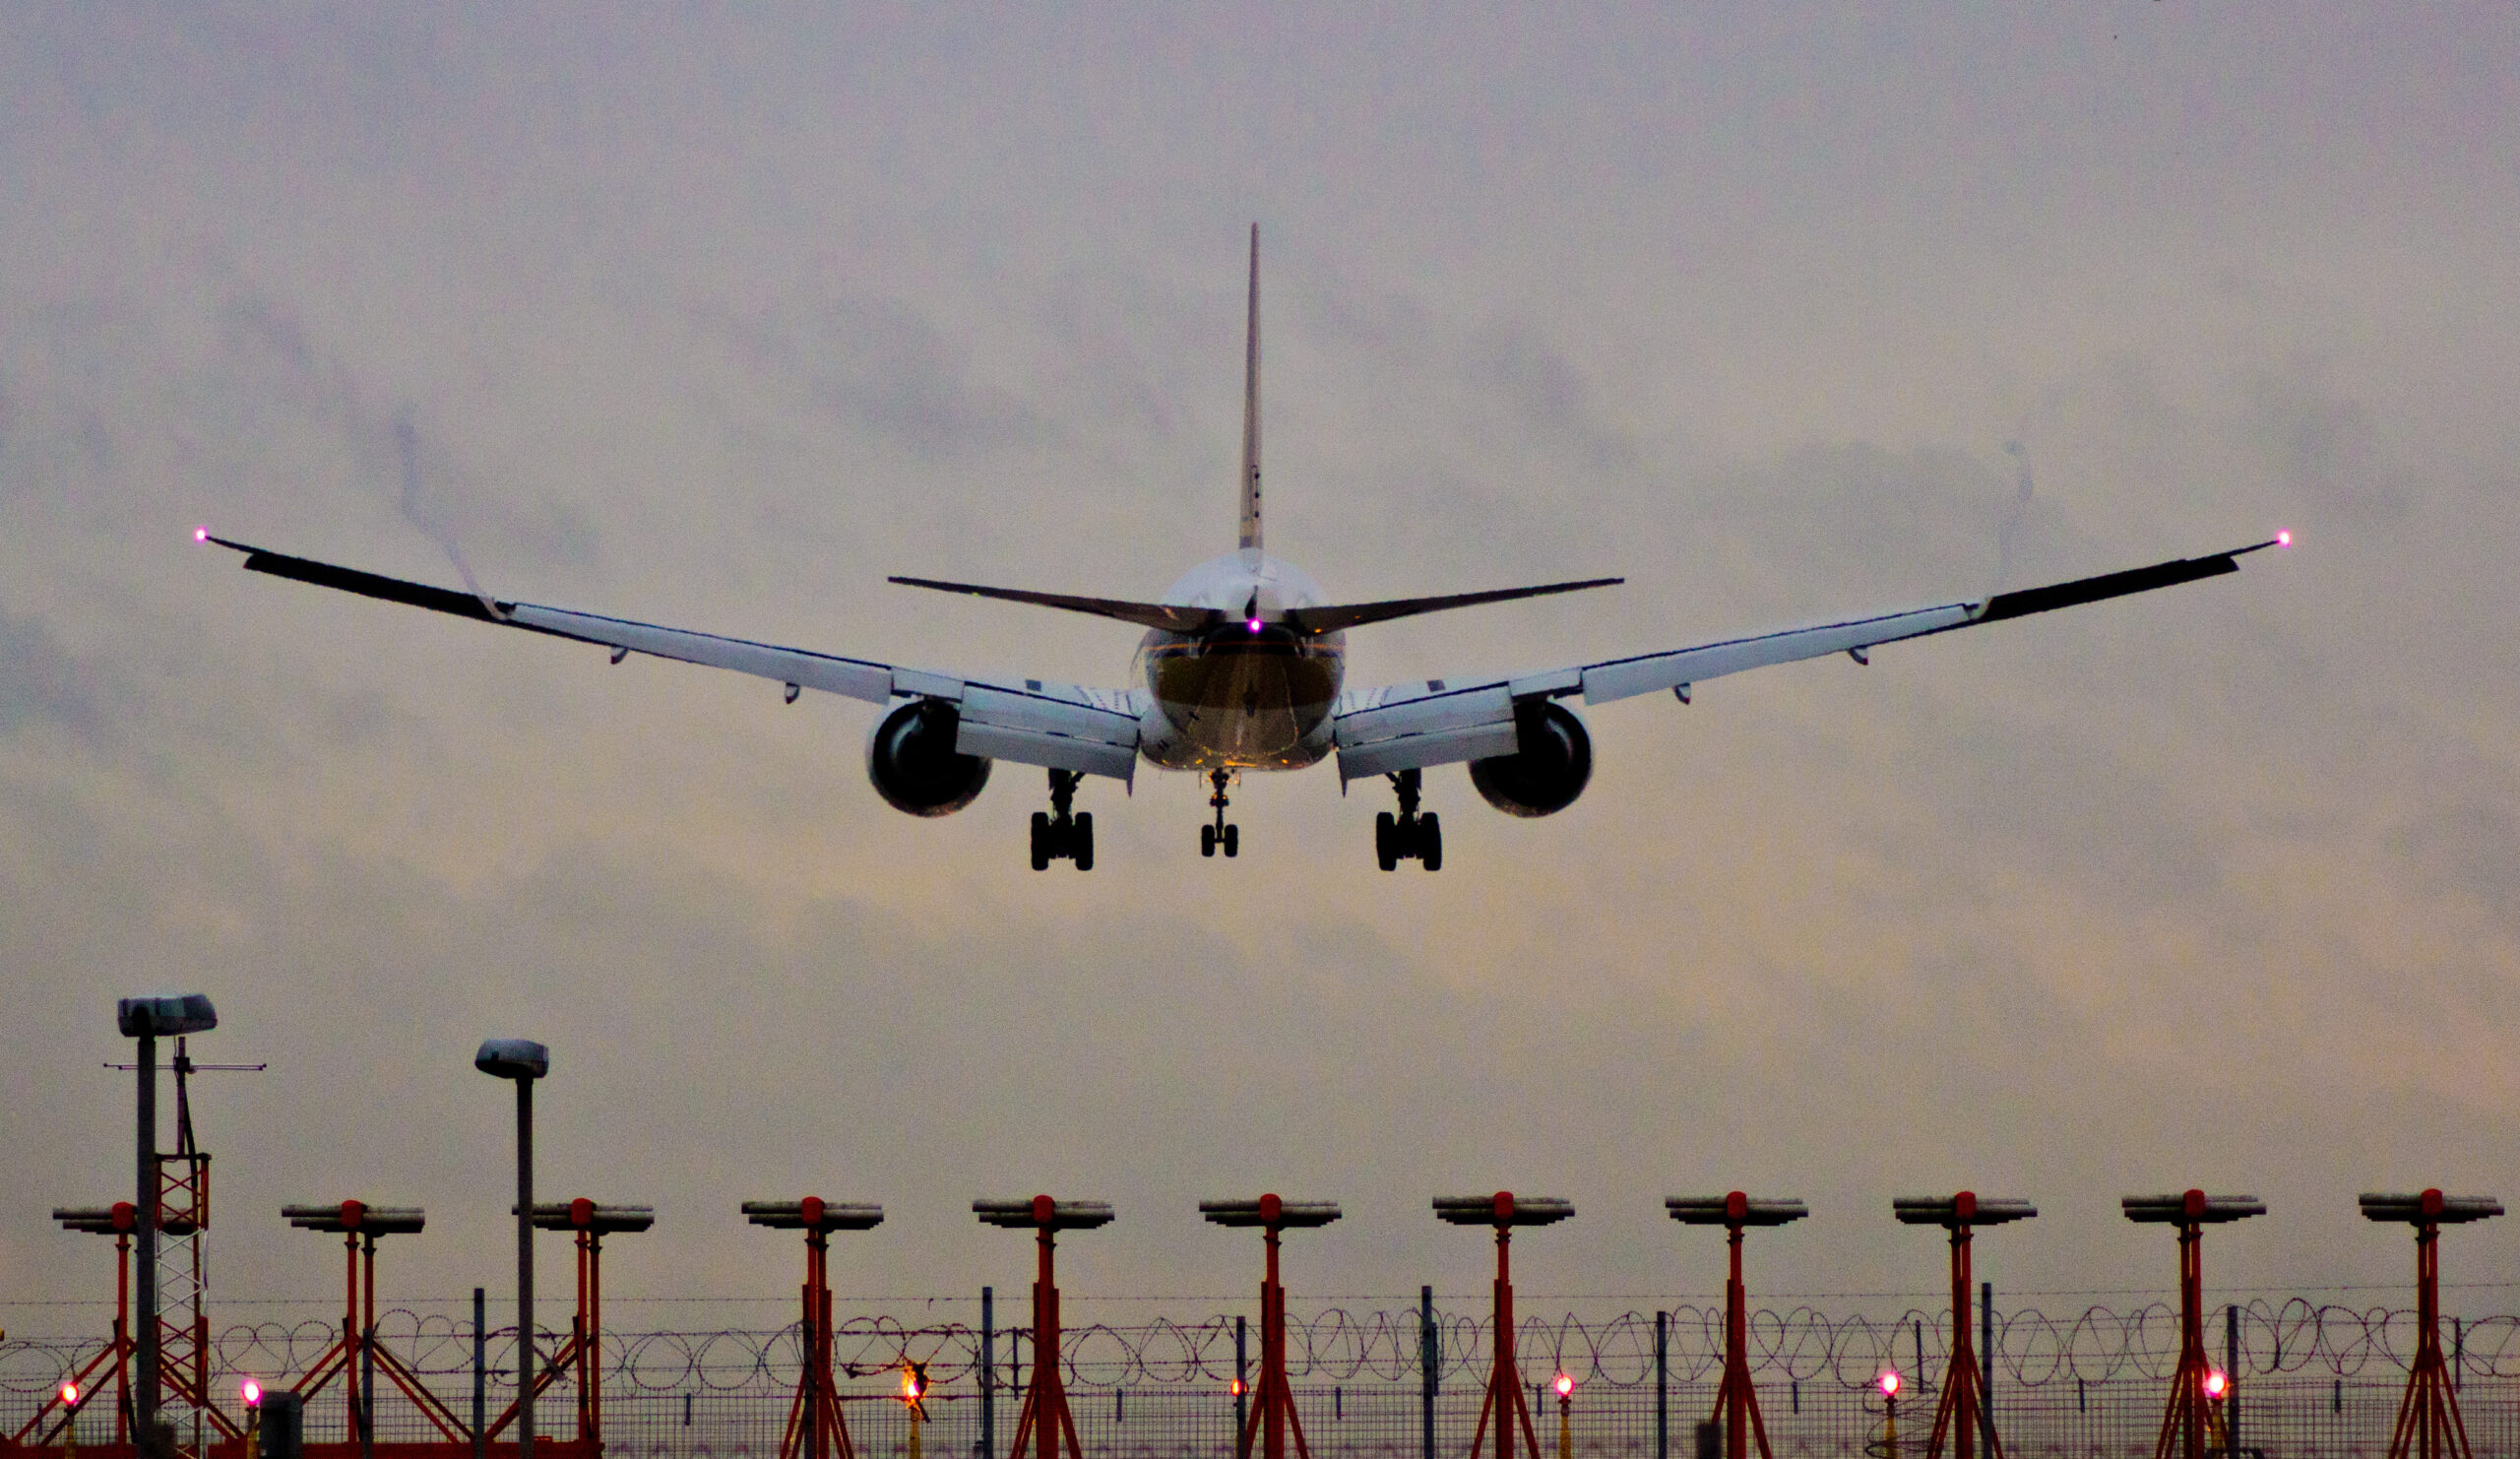 Poprawa efektywności funkcjonowania lotniska Heathrow w oparciu o rozwiązanie IBM Maximo od Cohesive